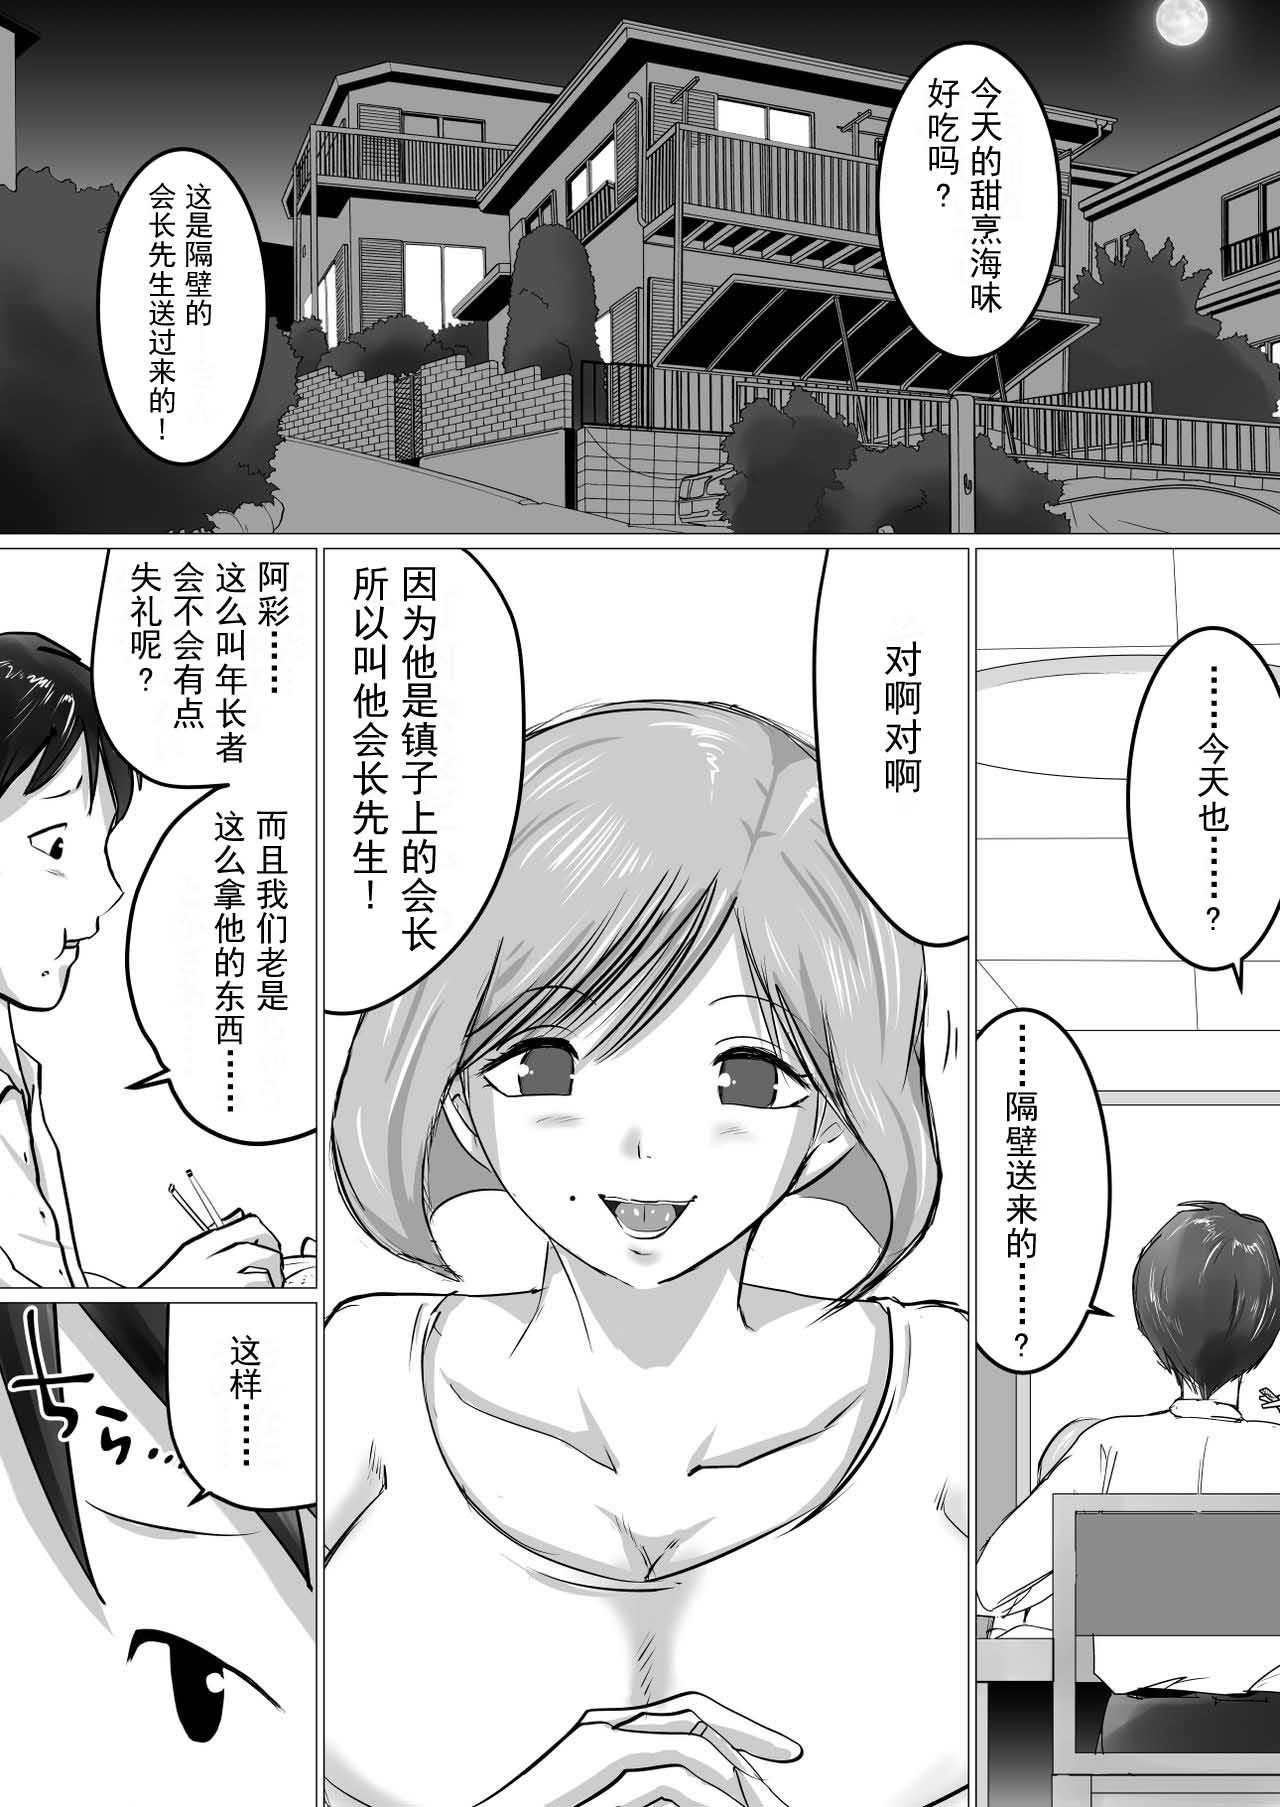 Trimmed [Makoto Shiyaka] Rinjin ni Dakare Tsuzukeru to iu koto[Chinese]【不可视汉化】 - Original Hot Girl Porn - Page 2